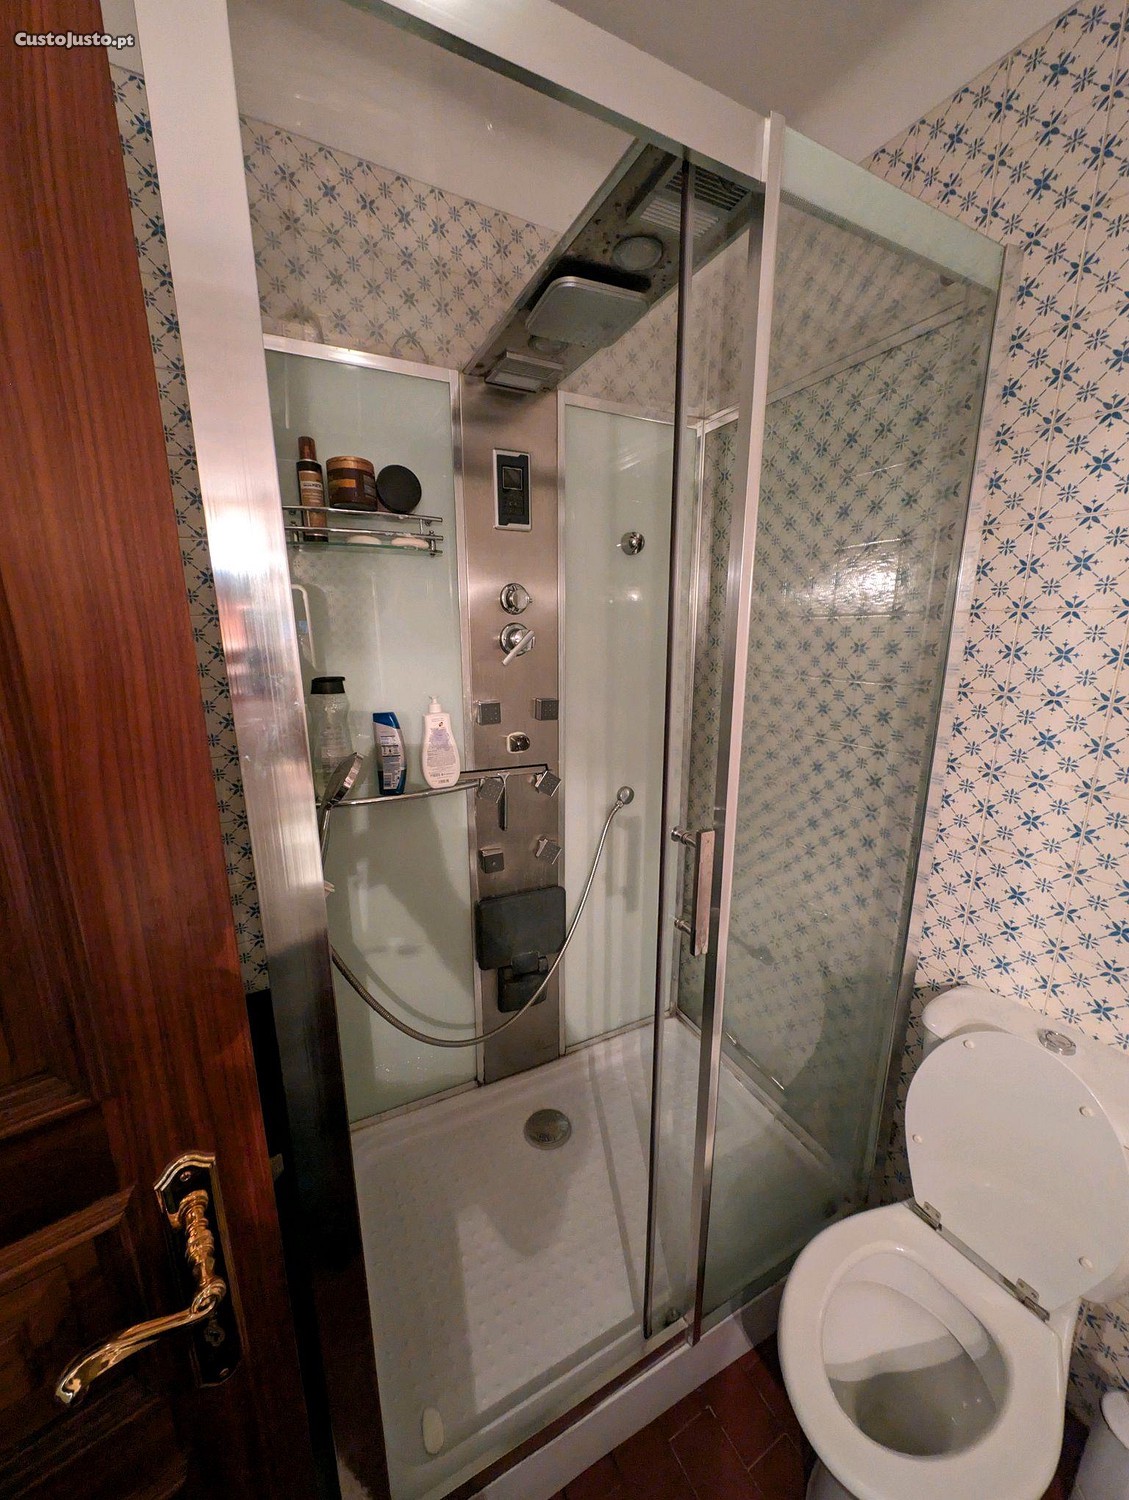 Cabine de duche